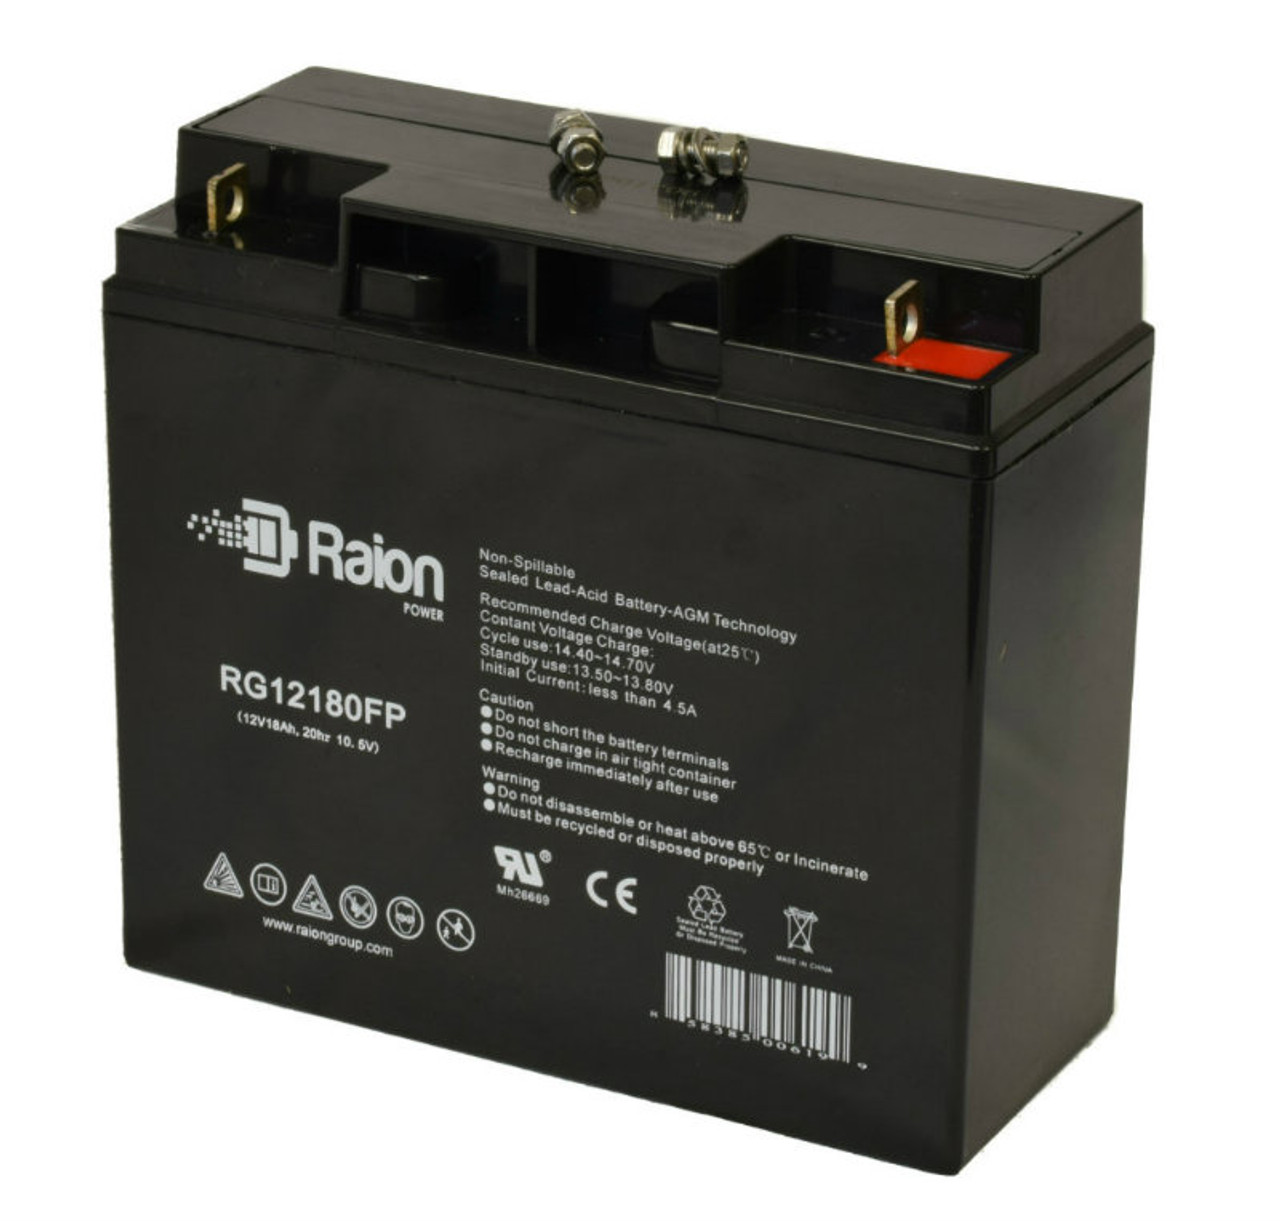 Raion Power RG12180FP 12V 18Ah Lead Acid Battery for Peak PKC0AZ-04 900 Peak Amp Jump Starter